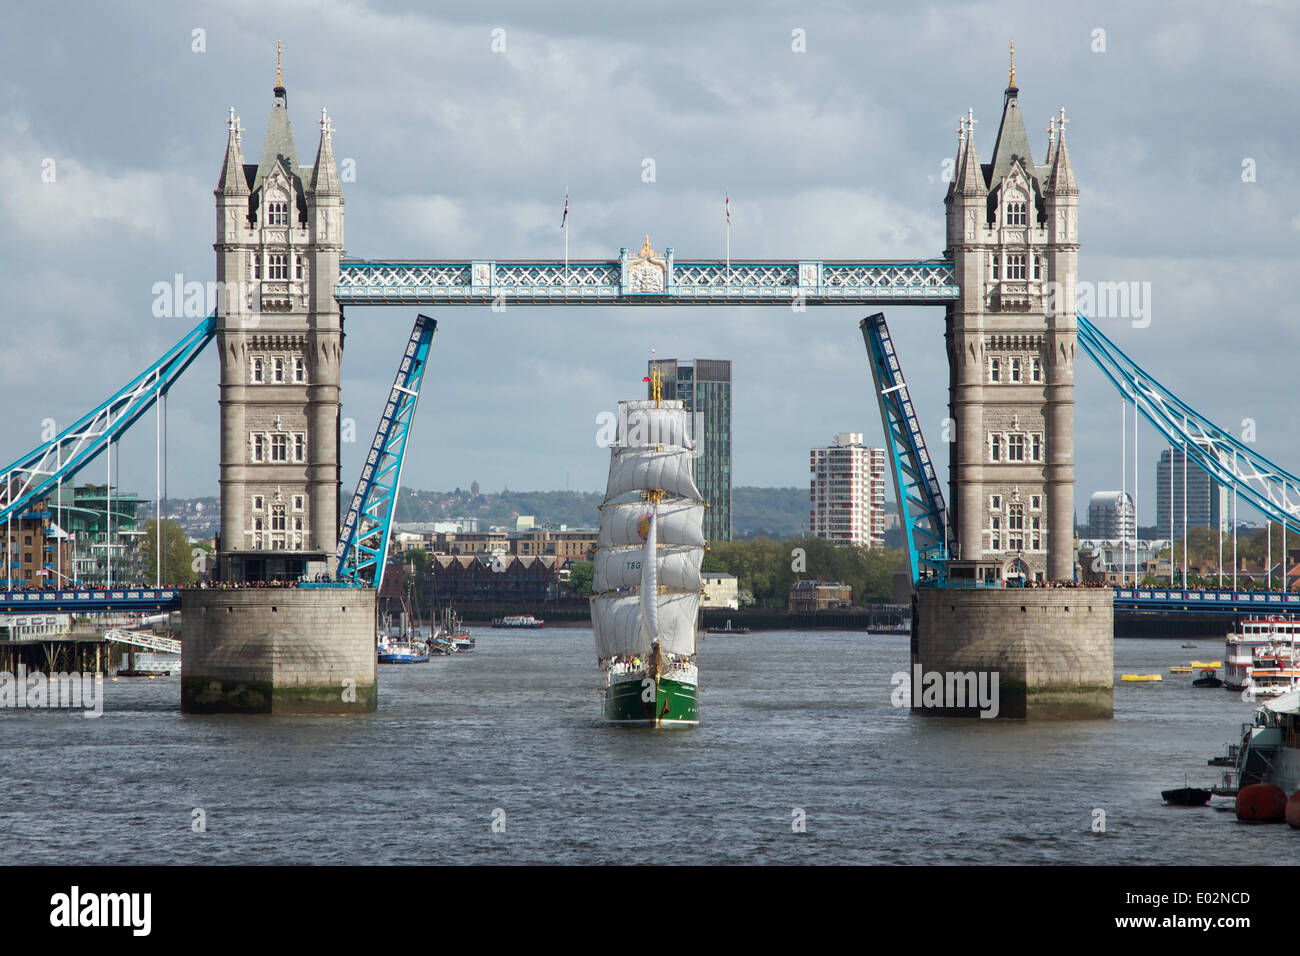 Le grand navire de construction allemande, l'Alexander von Humboldt, ll, en passant par le London Tower Bridge à full sail, 26 avril 2014 Banque D'Images